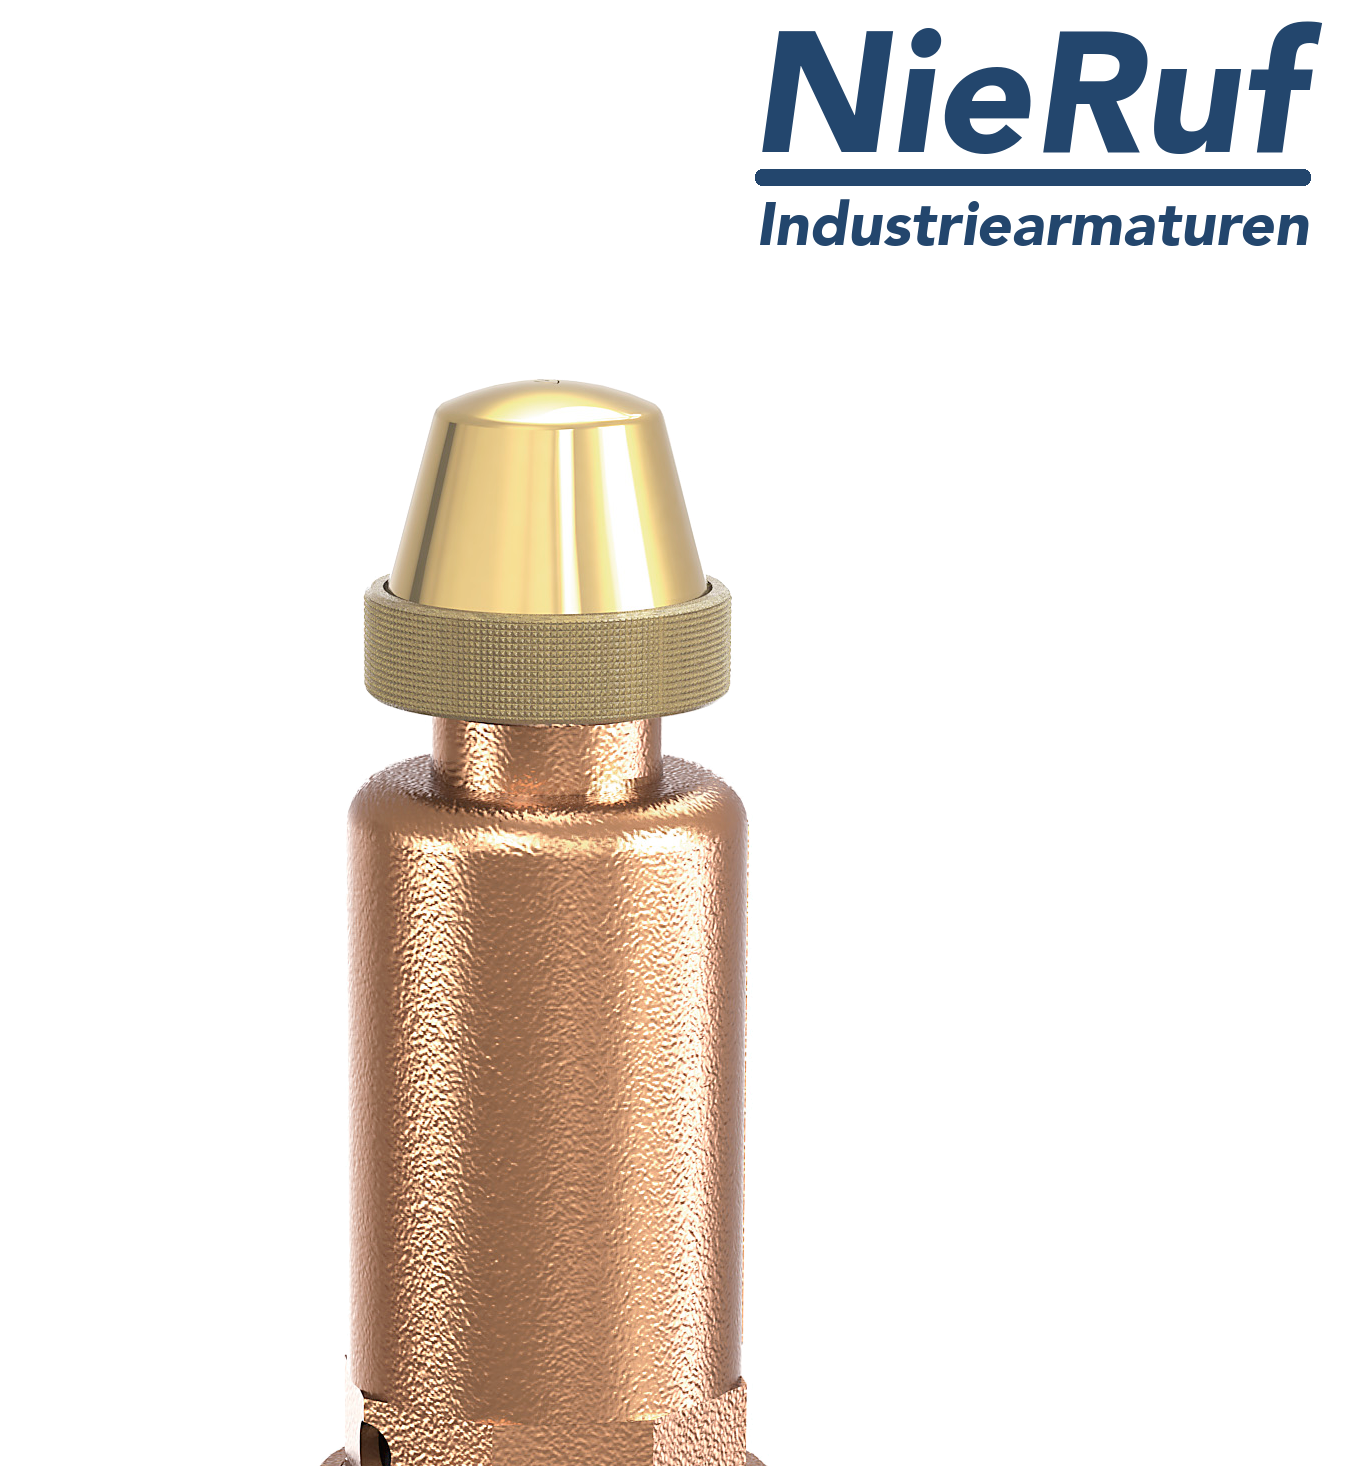 soupape de sûreté en équerre 3/4" x 1 1/4" femelle SV03 fluides liquides neutres, bronze NBR